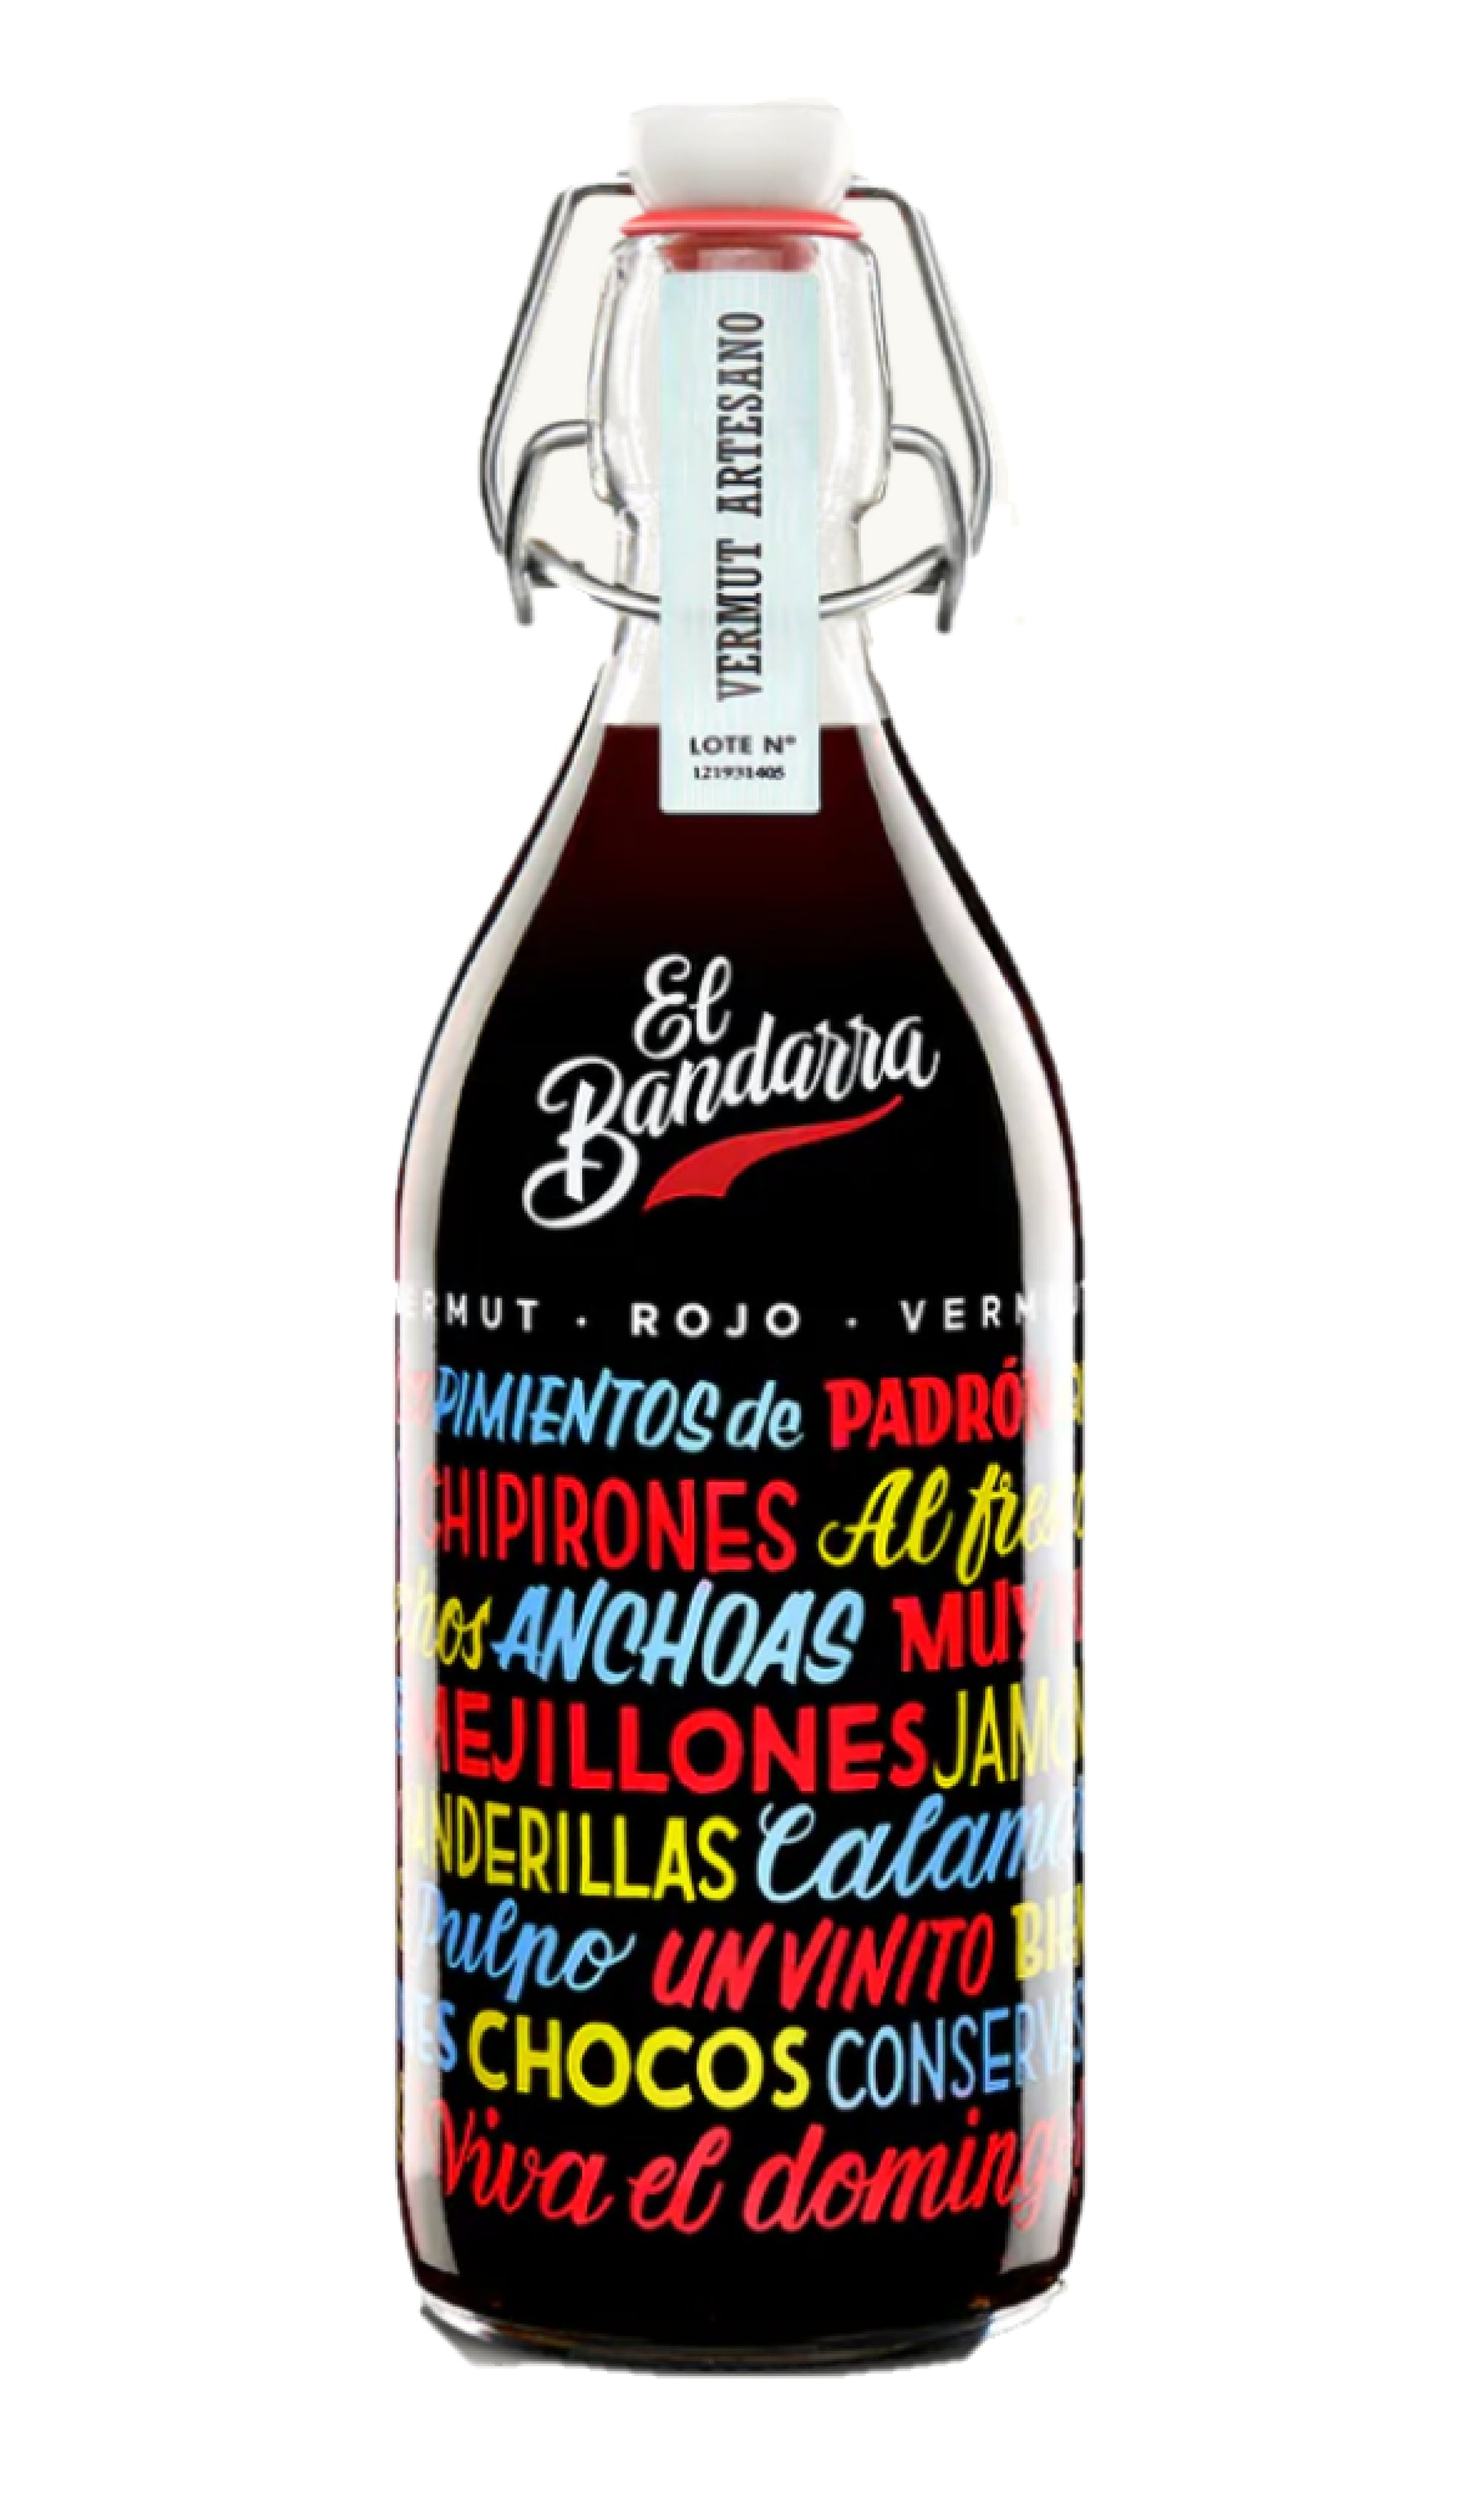 El Bandarra - Spanish Red Vermouth (1L)